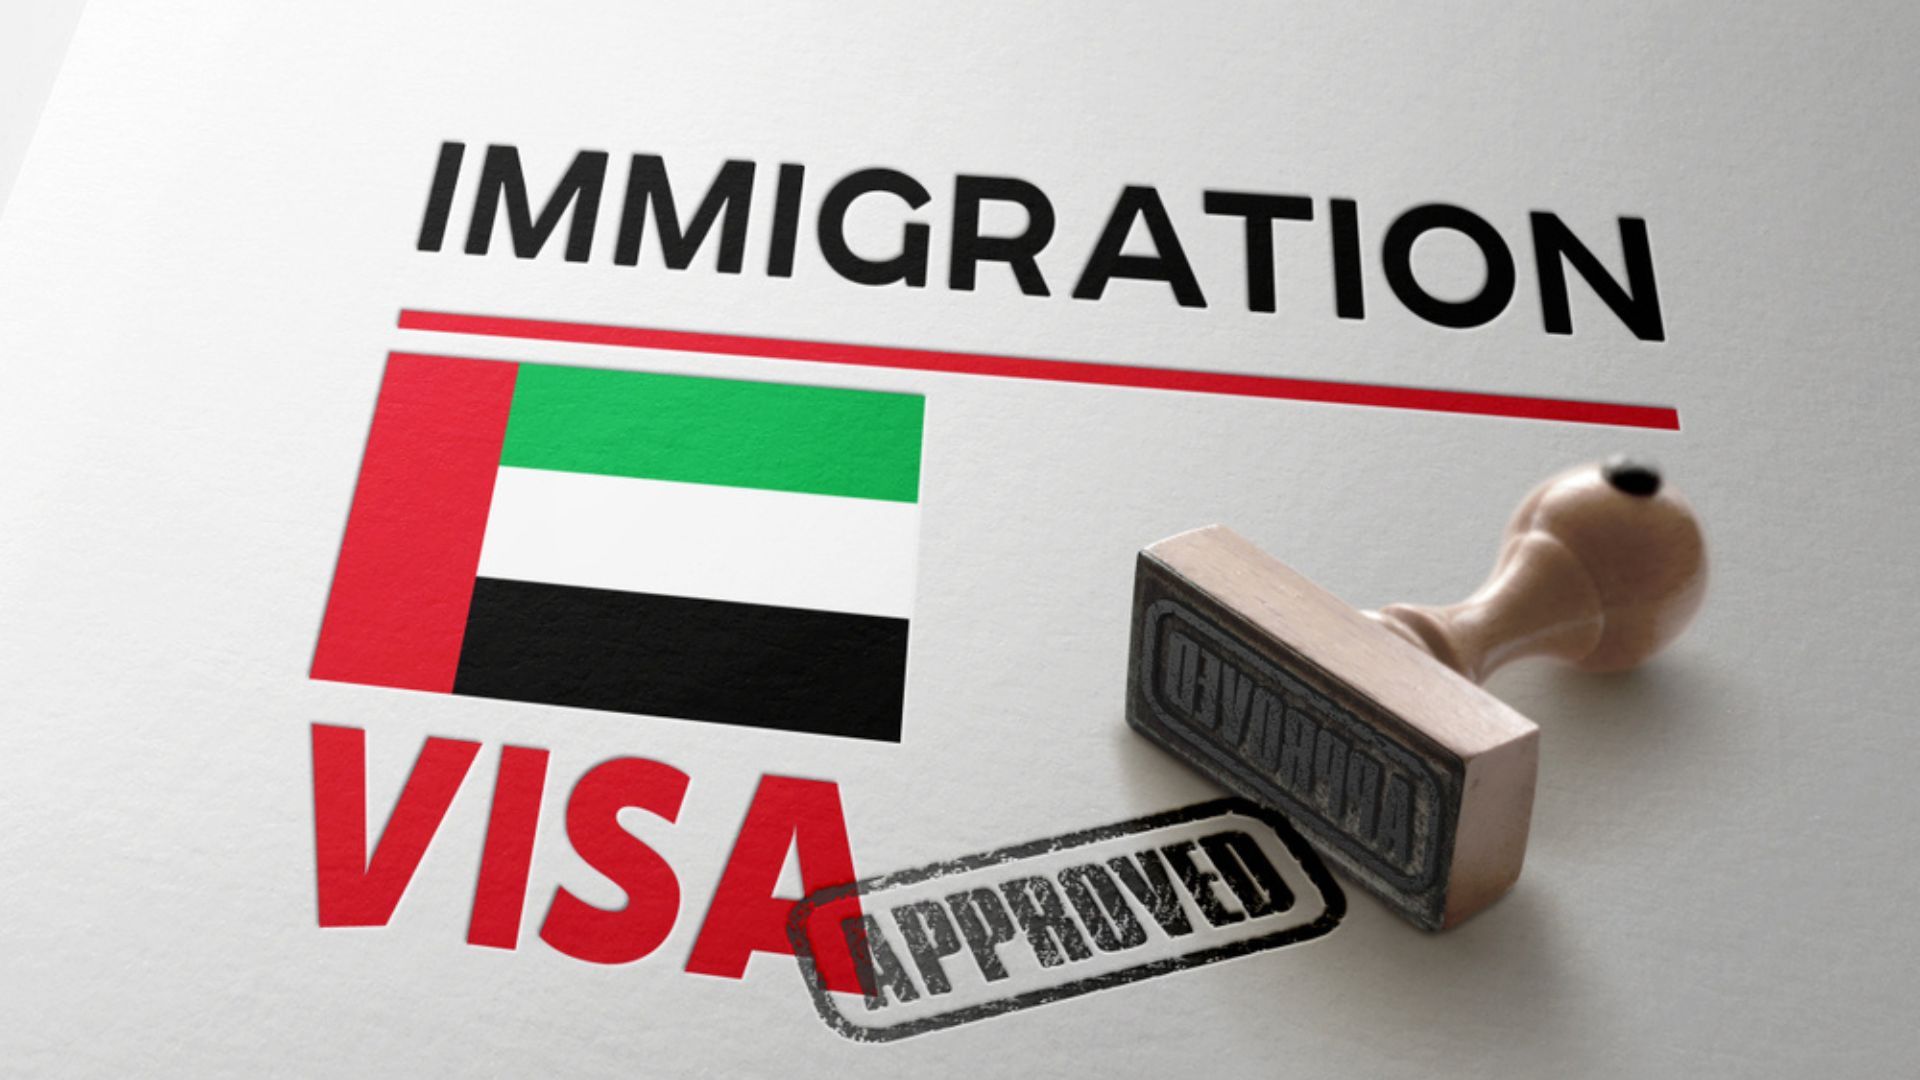 UAE visa